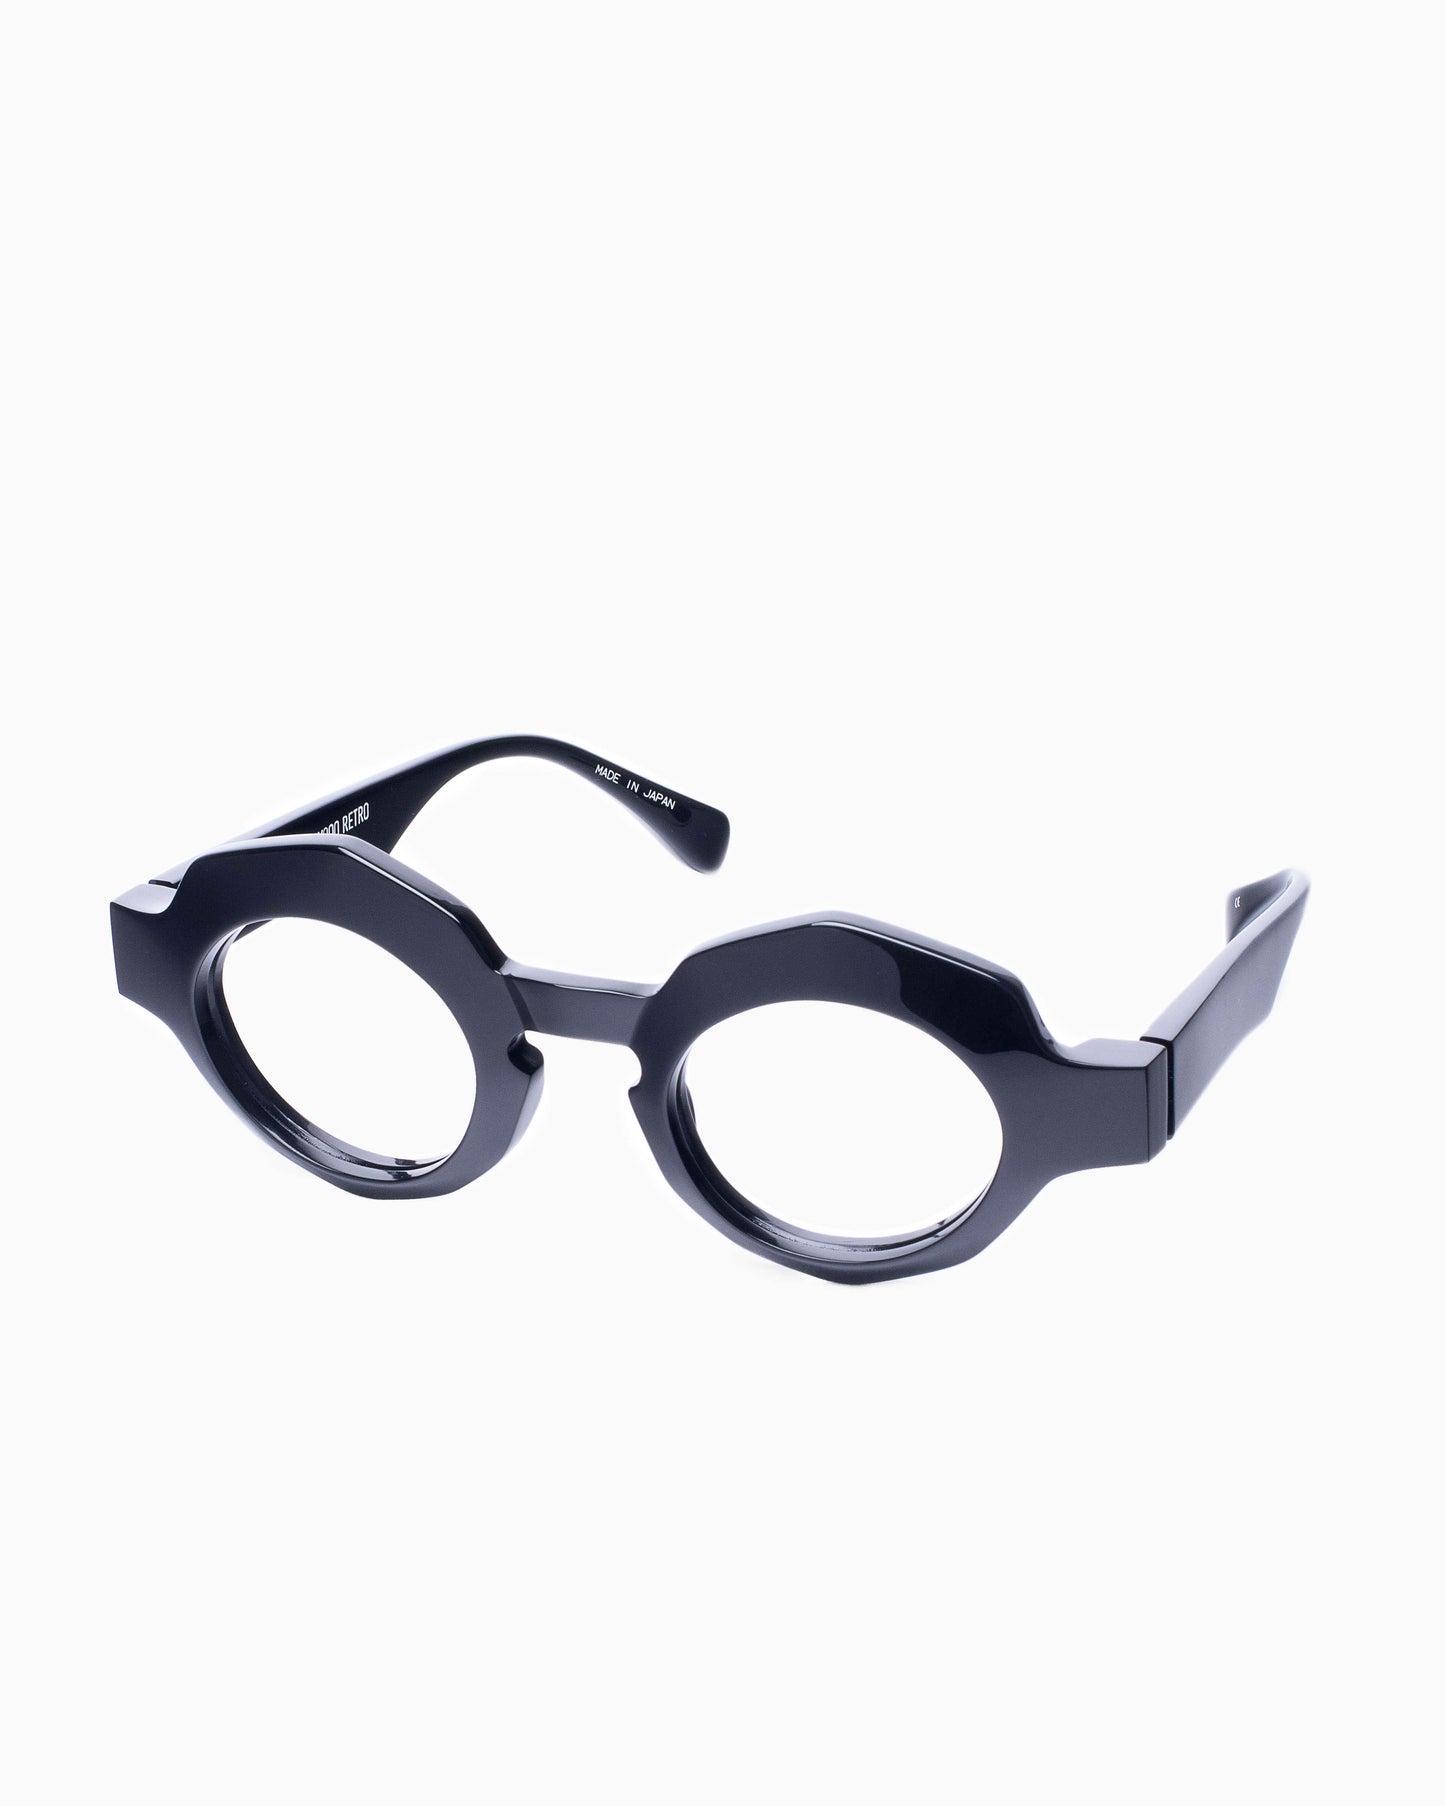 Factory 900-RF026-001 | glasses bar